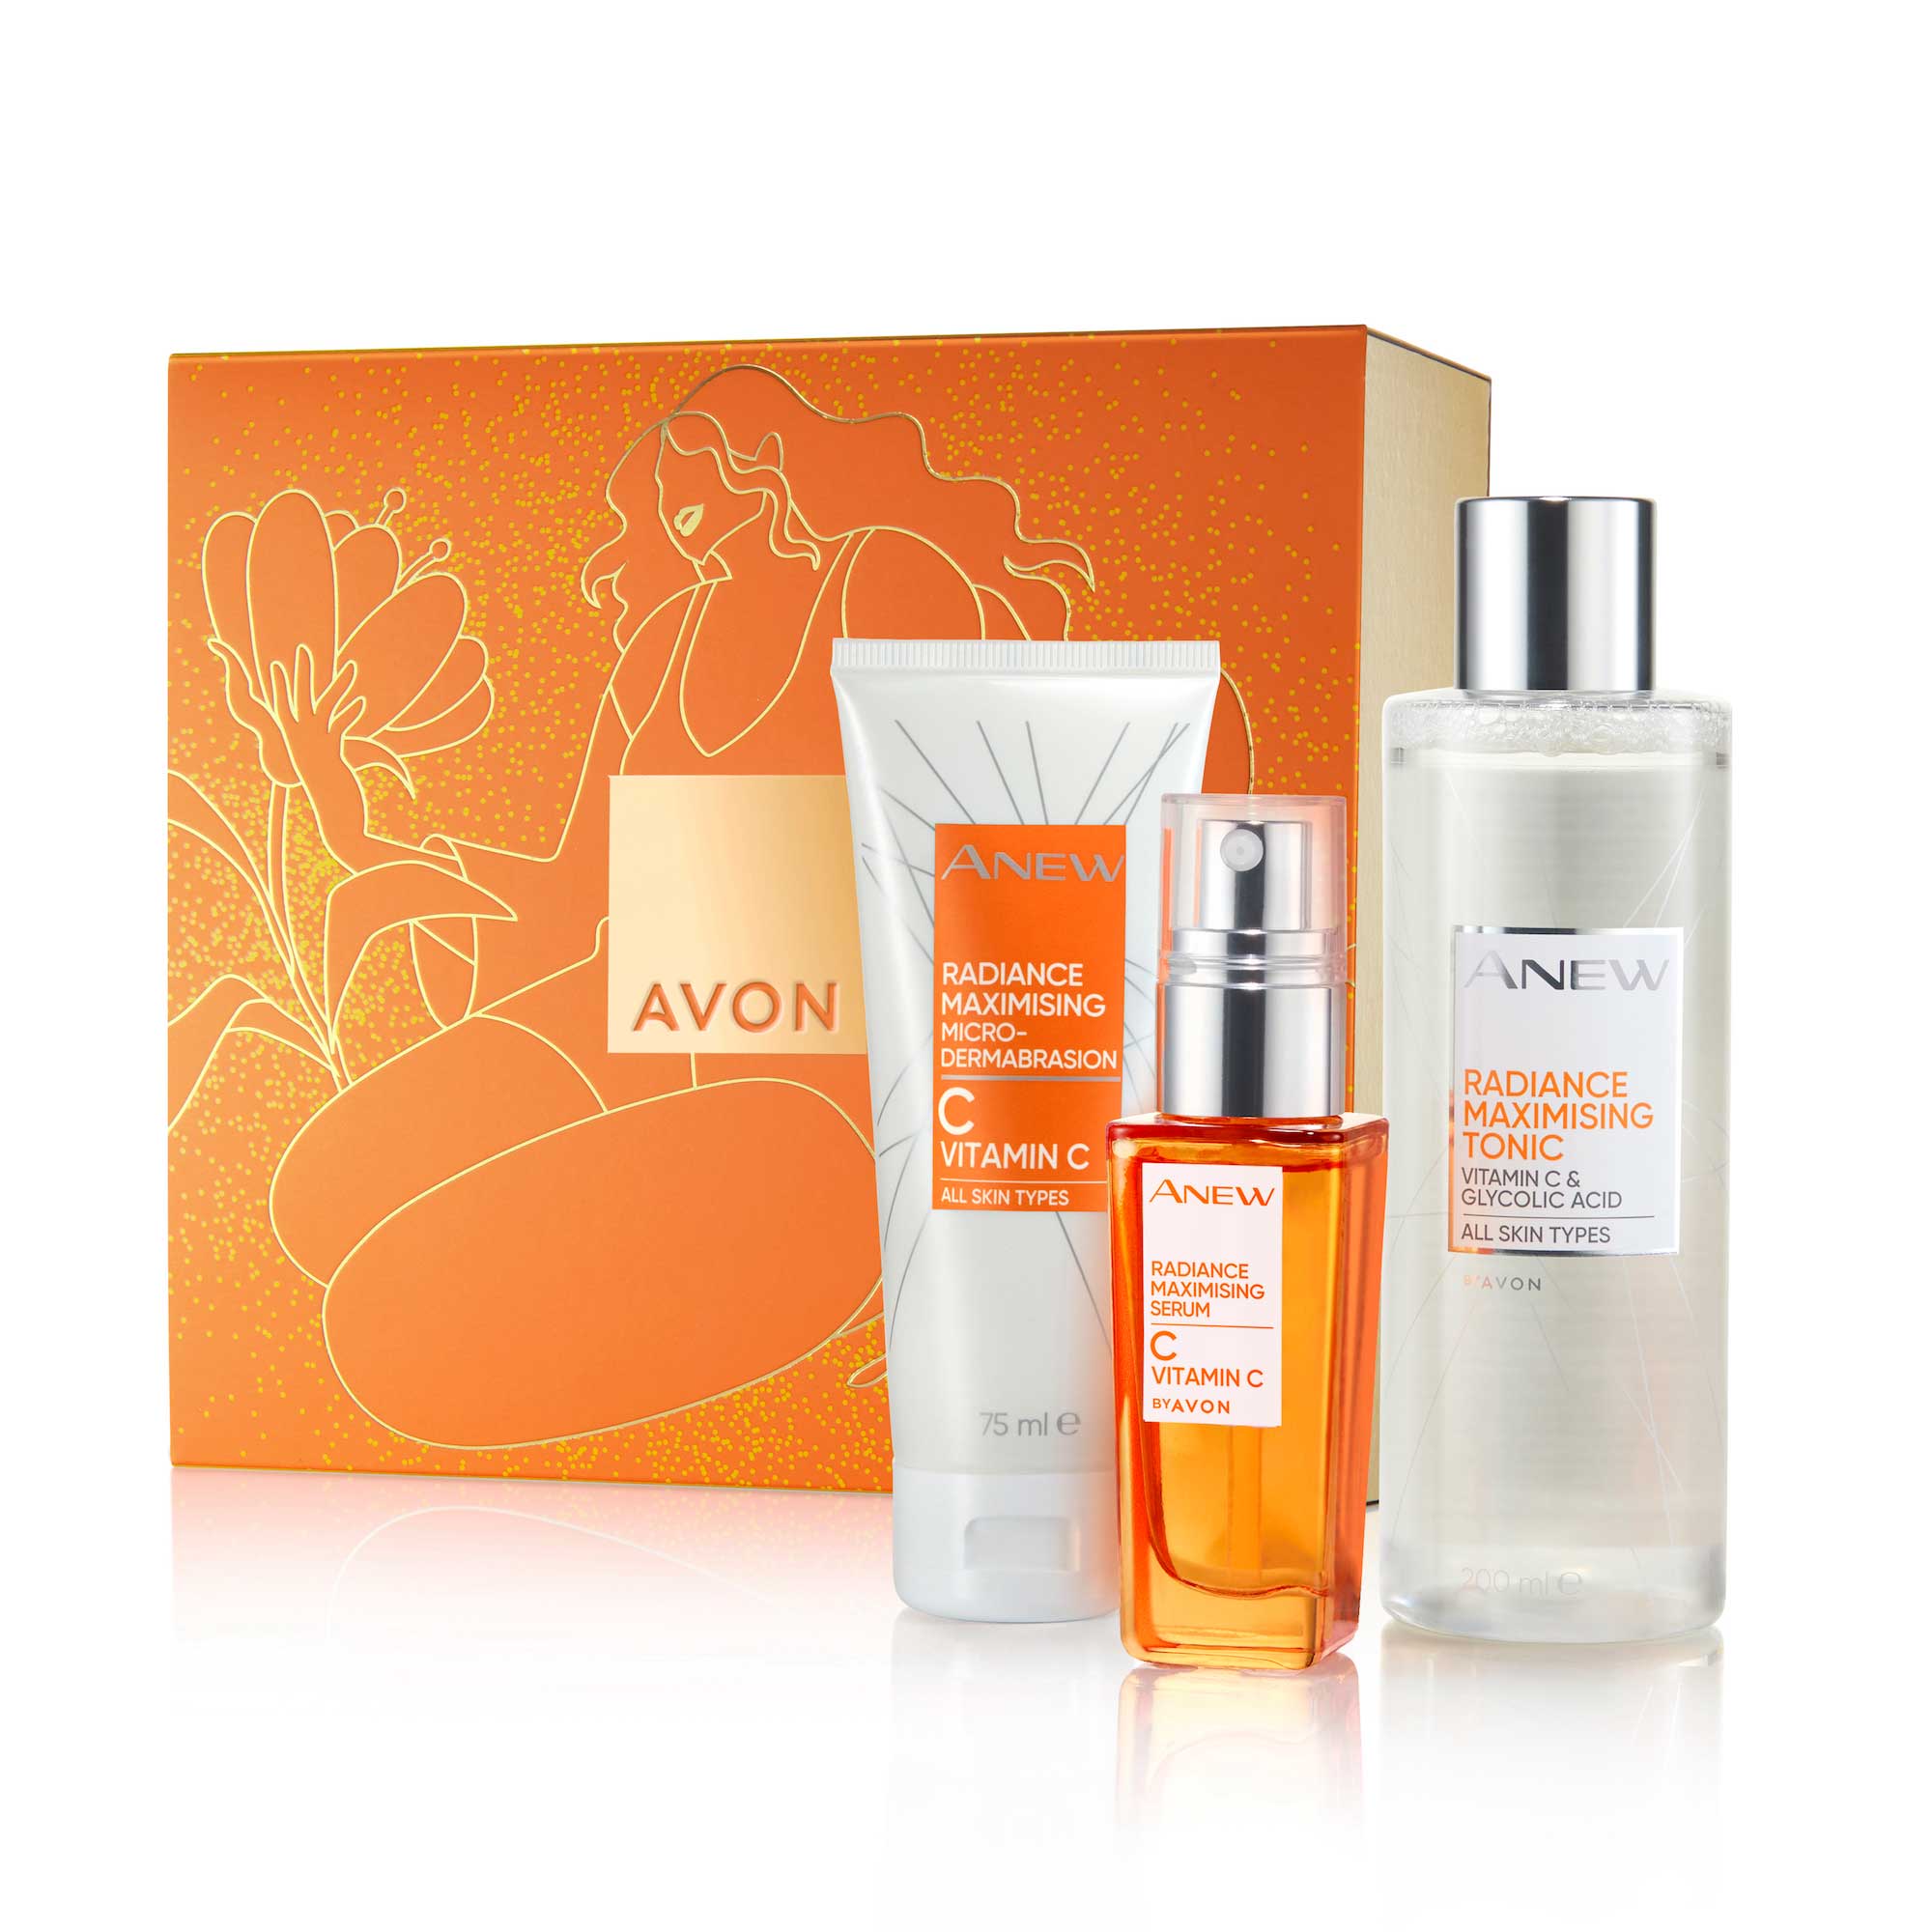 Für eine schöne Bescherung: 3 Avon Anew Vitamin C Geschenk-Sets zu gewinnen